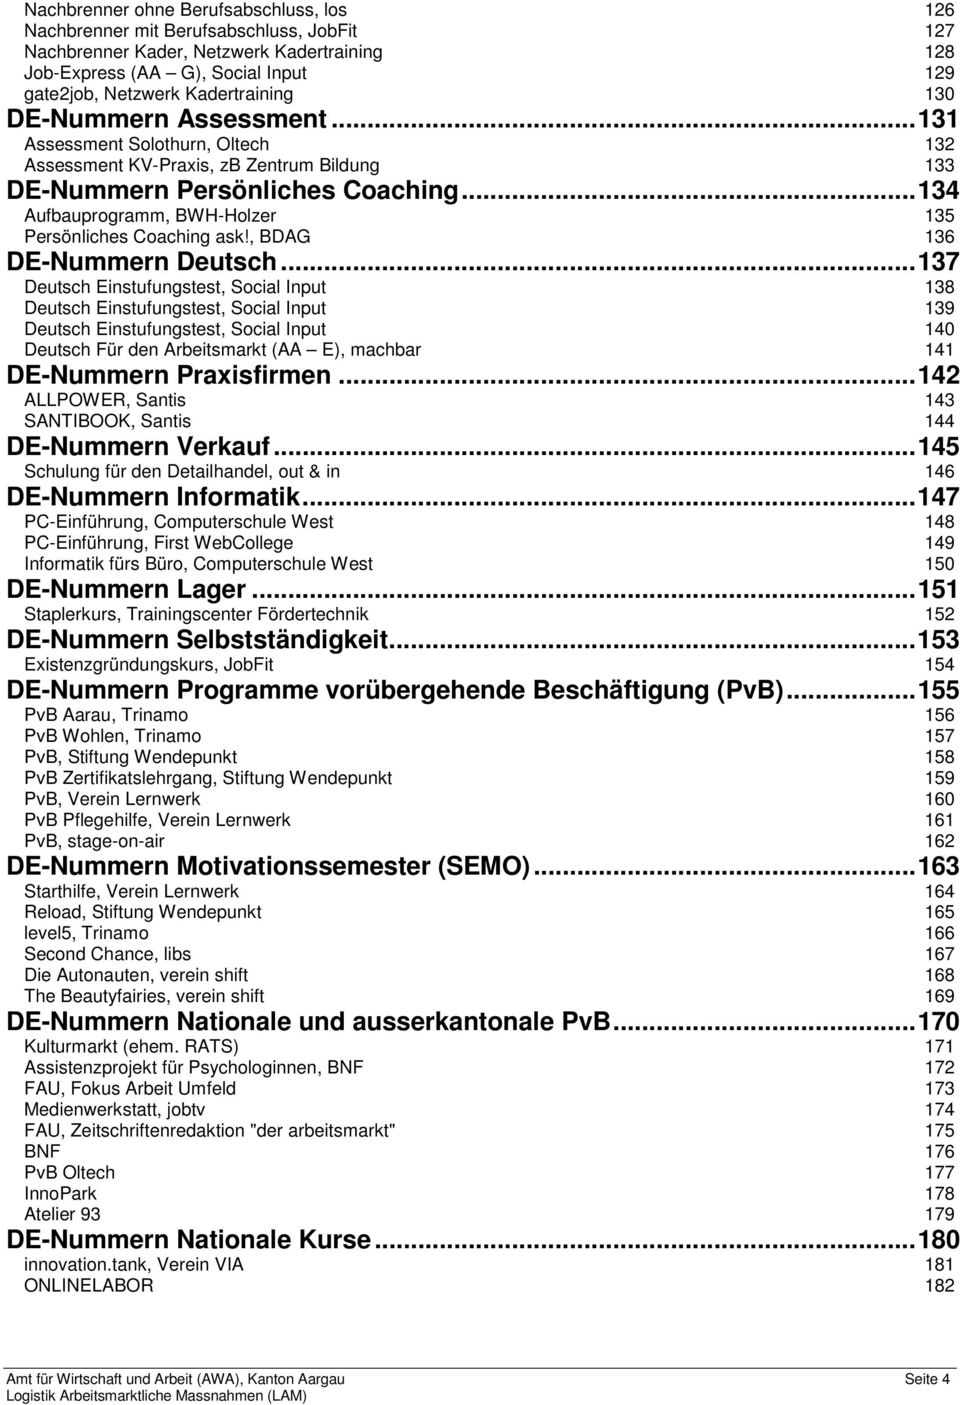 .. 134 Aufbauprogramm, BWH-Holzer 135 Persönliches Coaching ask!, BDAG 136 DE-Nummern Deutsch.